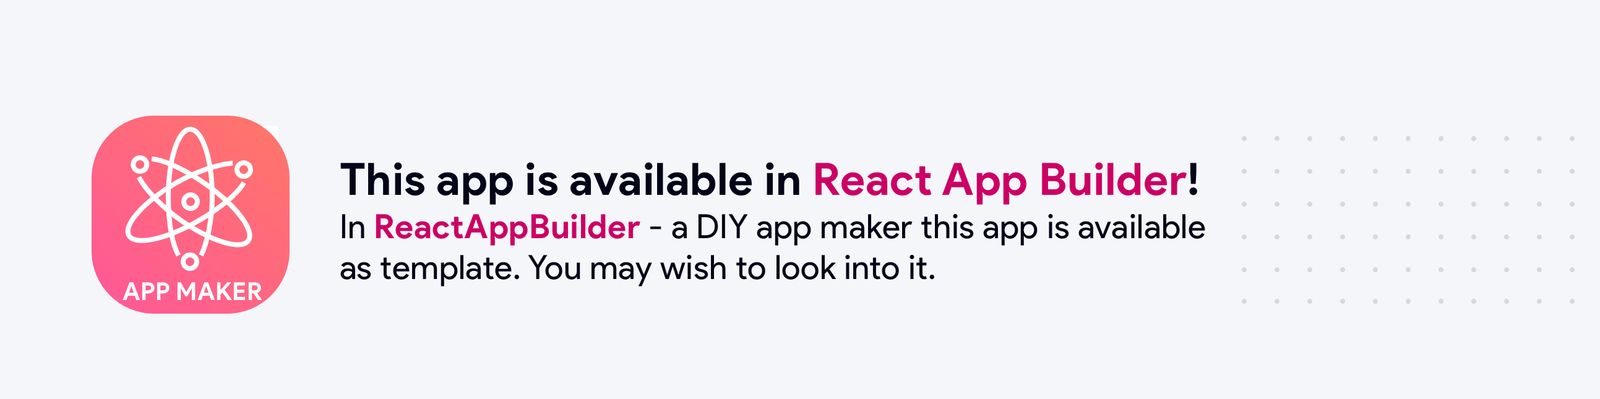 Radios App - React Native Expo app - 4